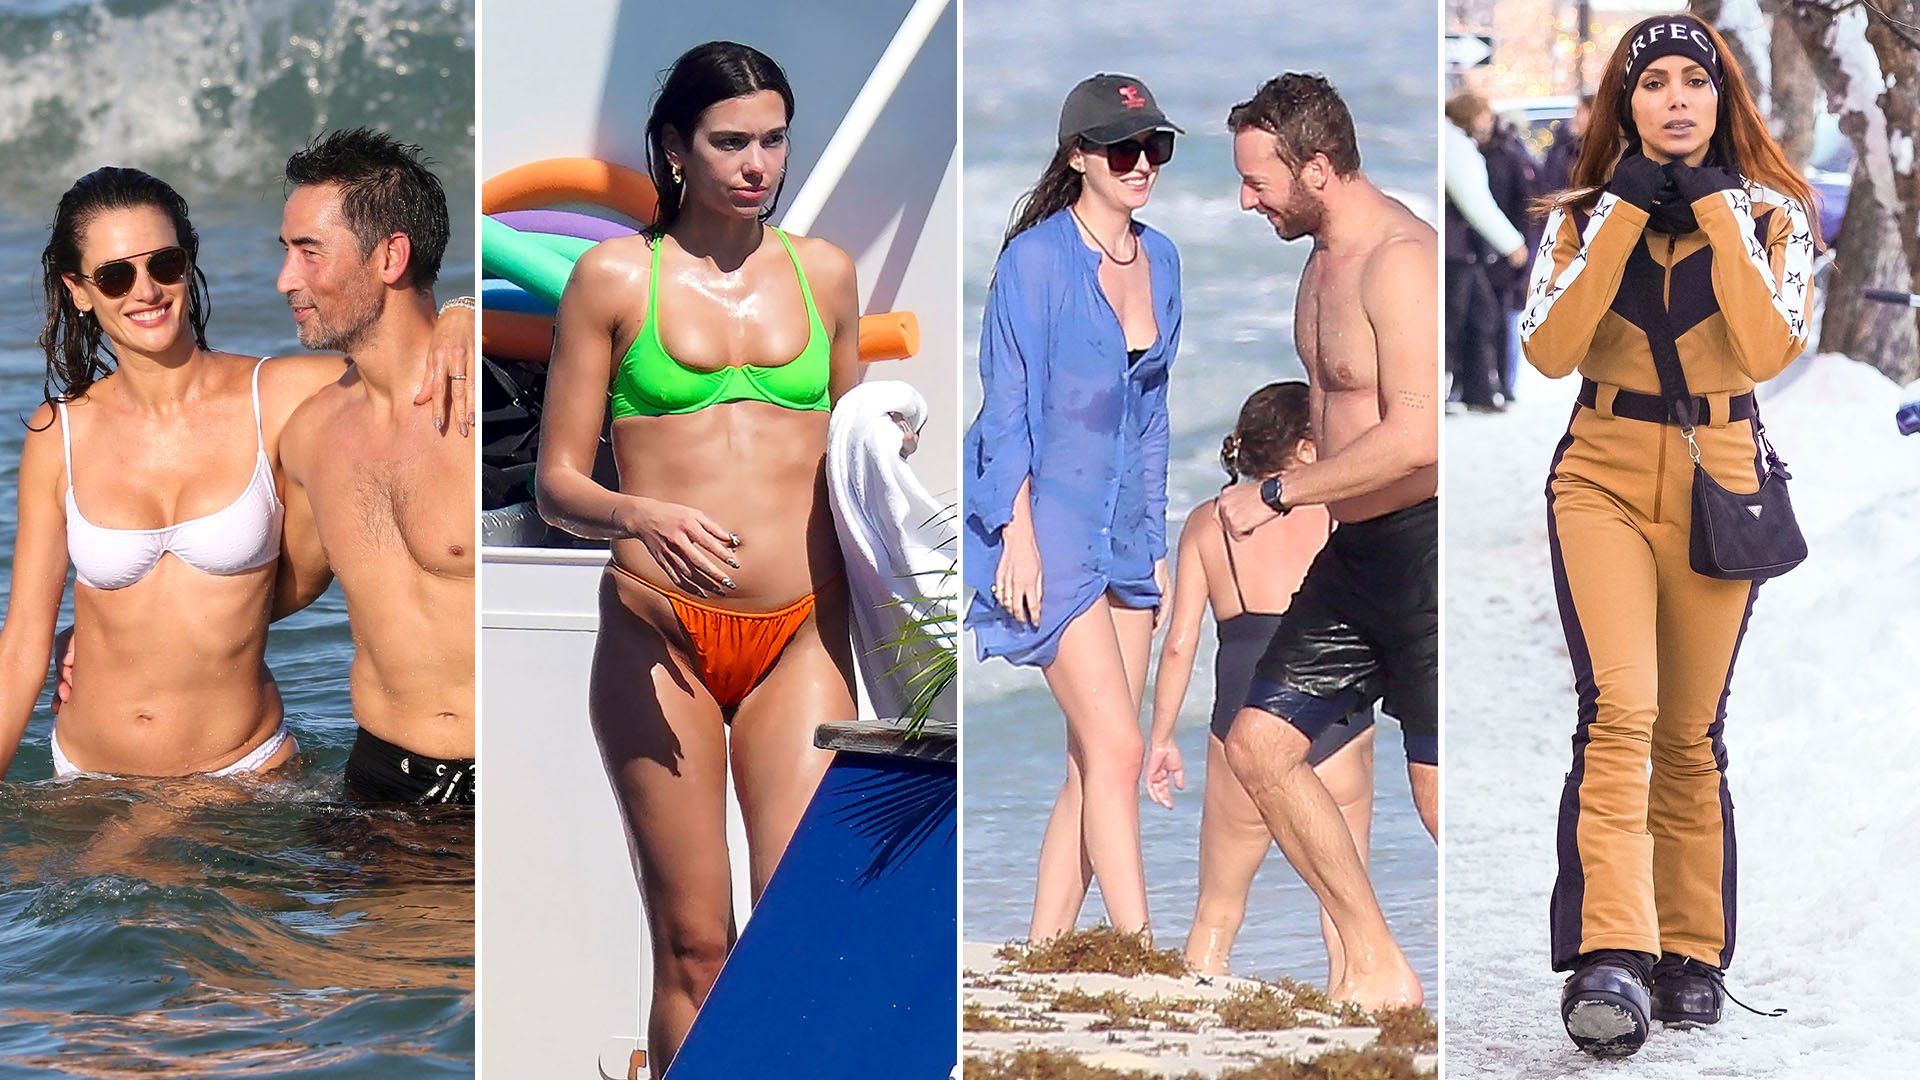 Los románticos días de playa de Alessandra Ambrosio en Brasil, las vacaciones familiares de Dua Lipa en Saint Barth: celebrities en un click